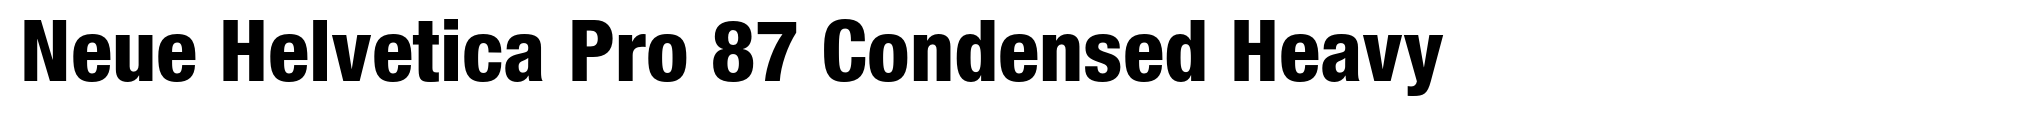 Neue Helvetica Pro 87 Condensed Heavy image